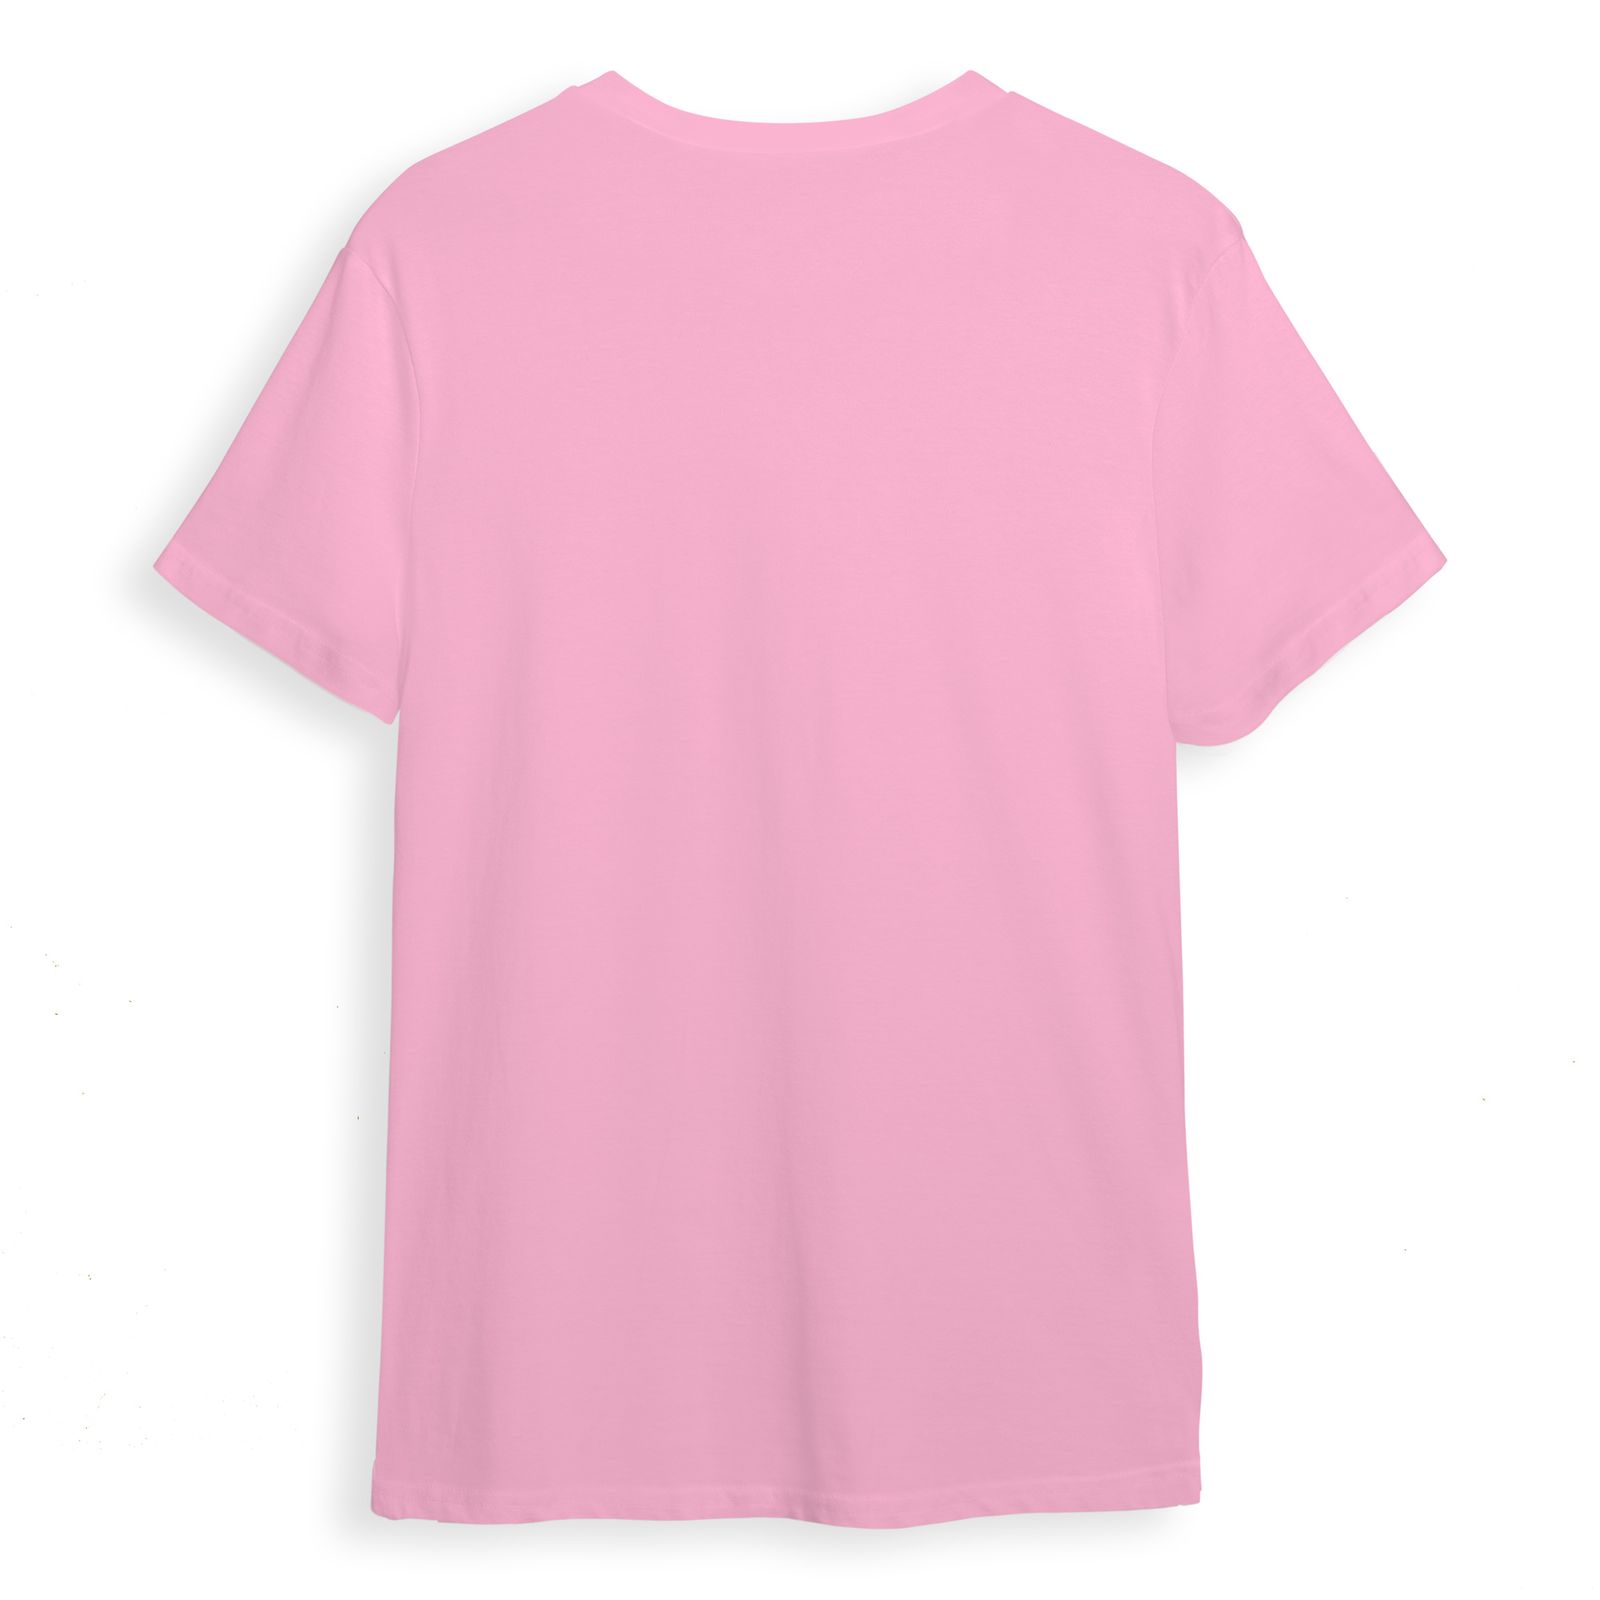 تی شرت آستین کوتاه زنانه مدل روز مادر کد 0376 رنگ صورتی -  - 2